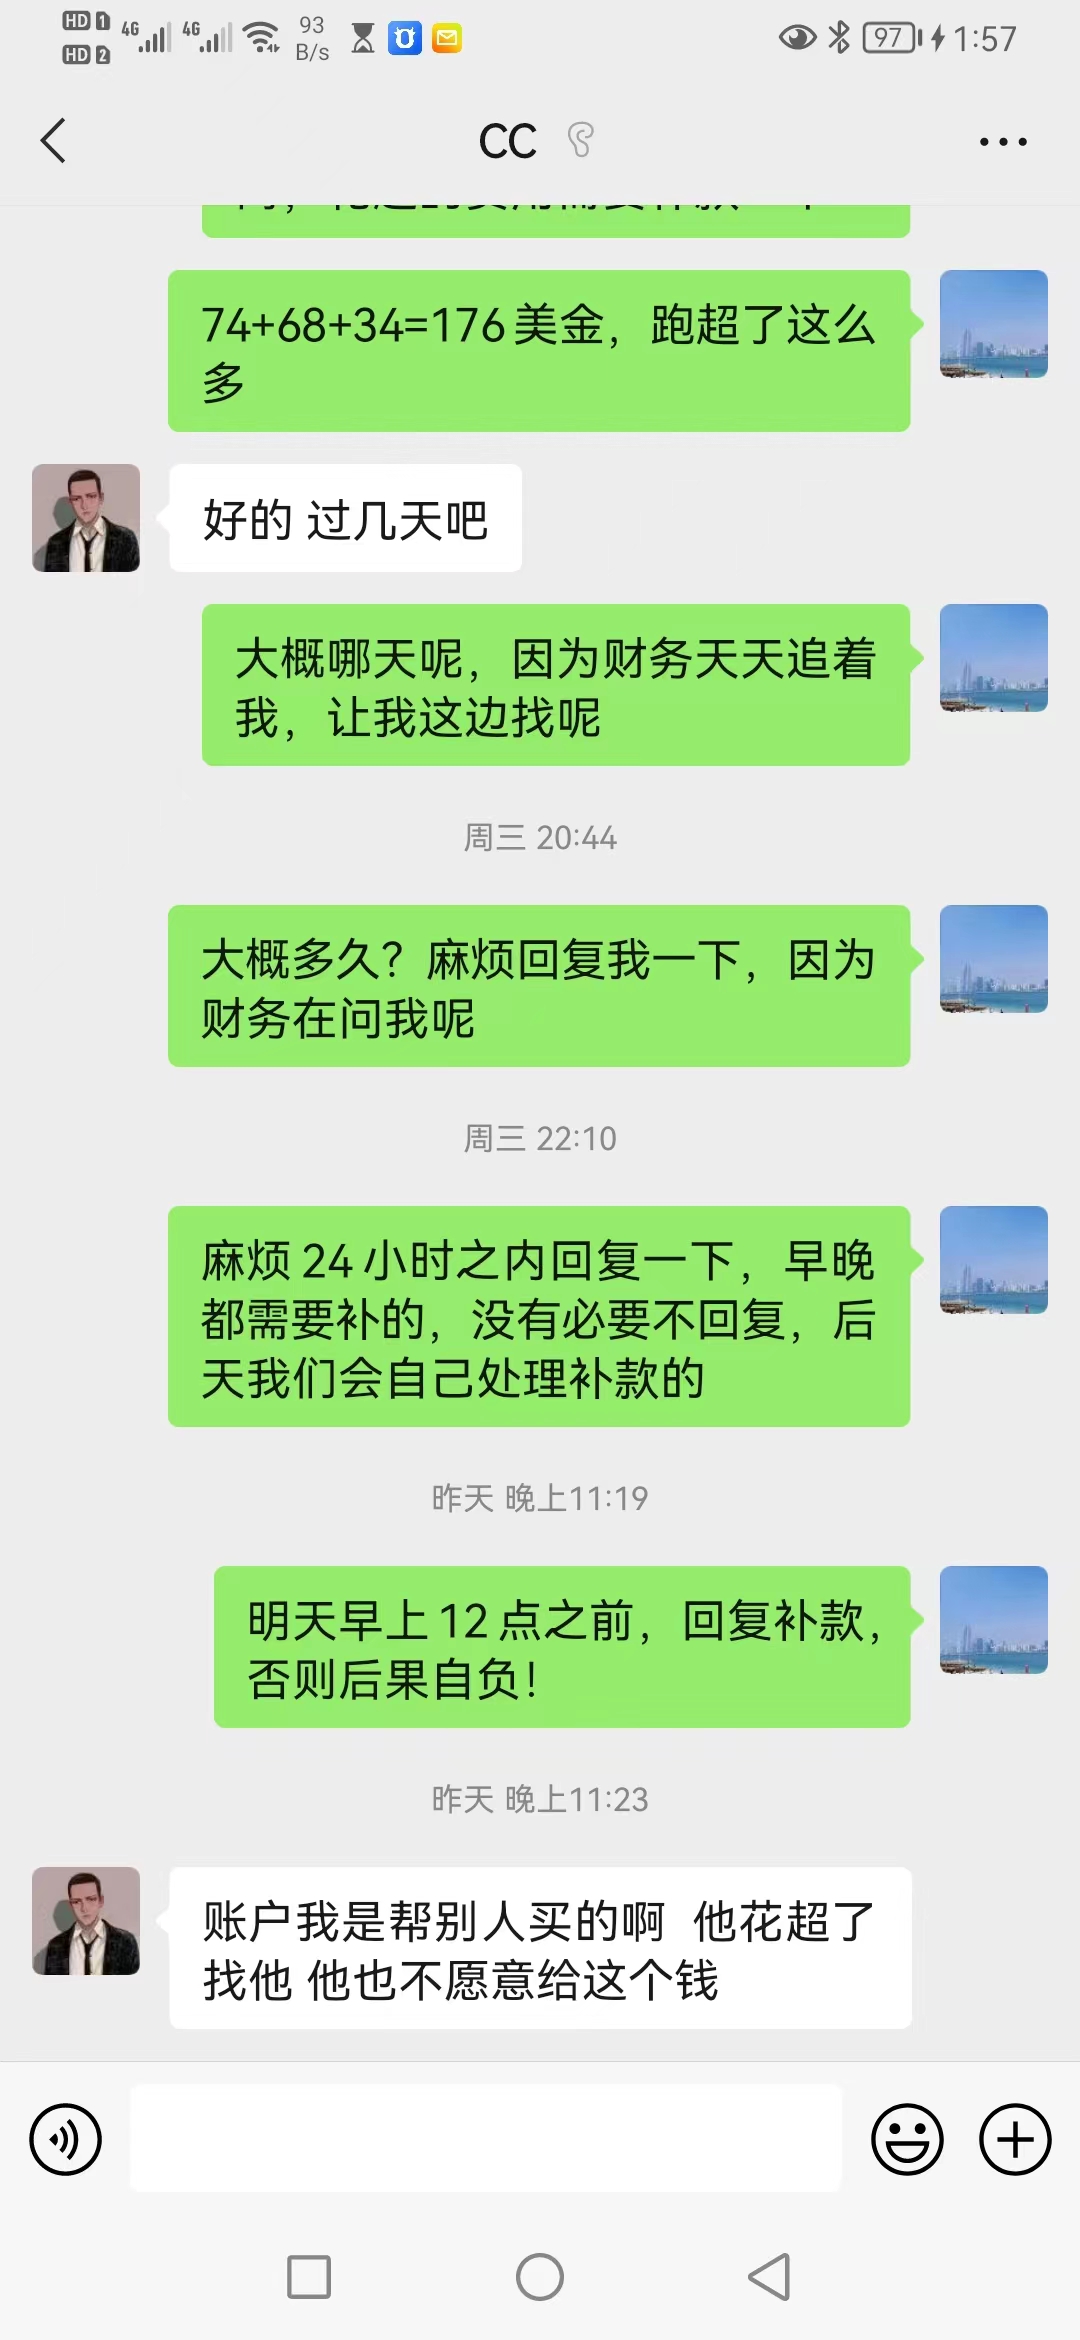 【不靠谱】深圳市盟合网络科技有限公司/茂名市墨语网络传媒有限公司